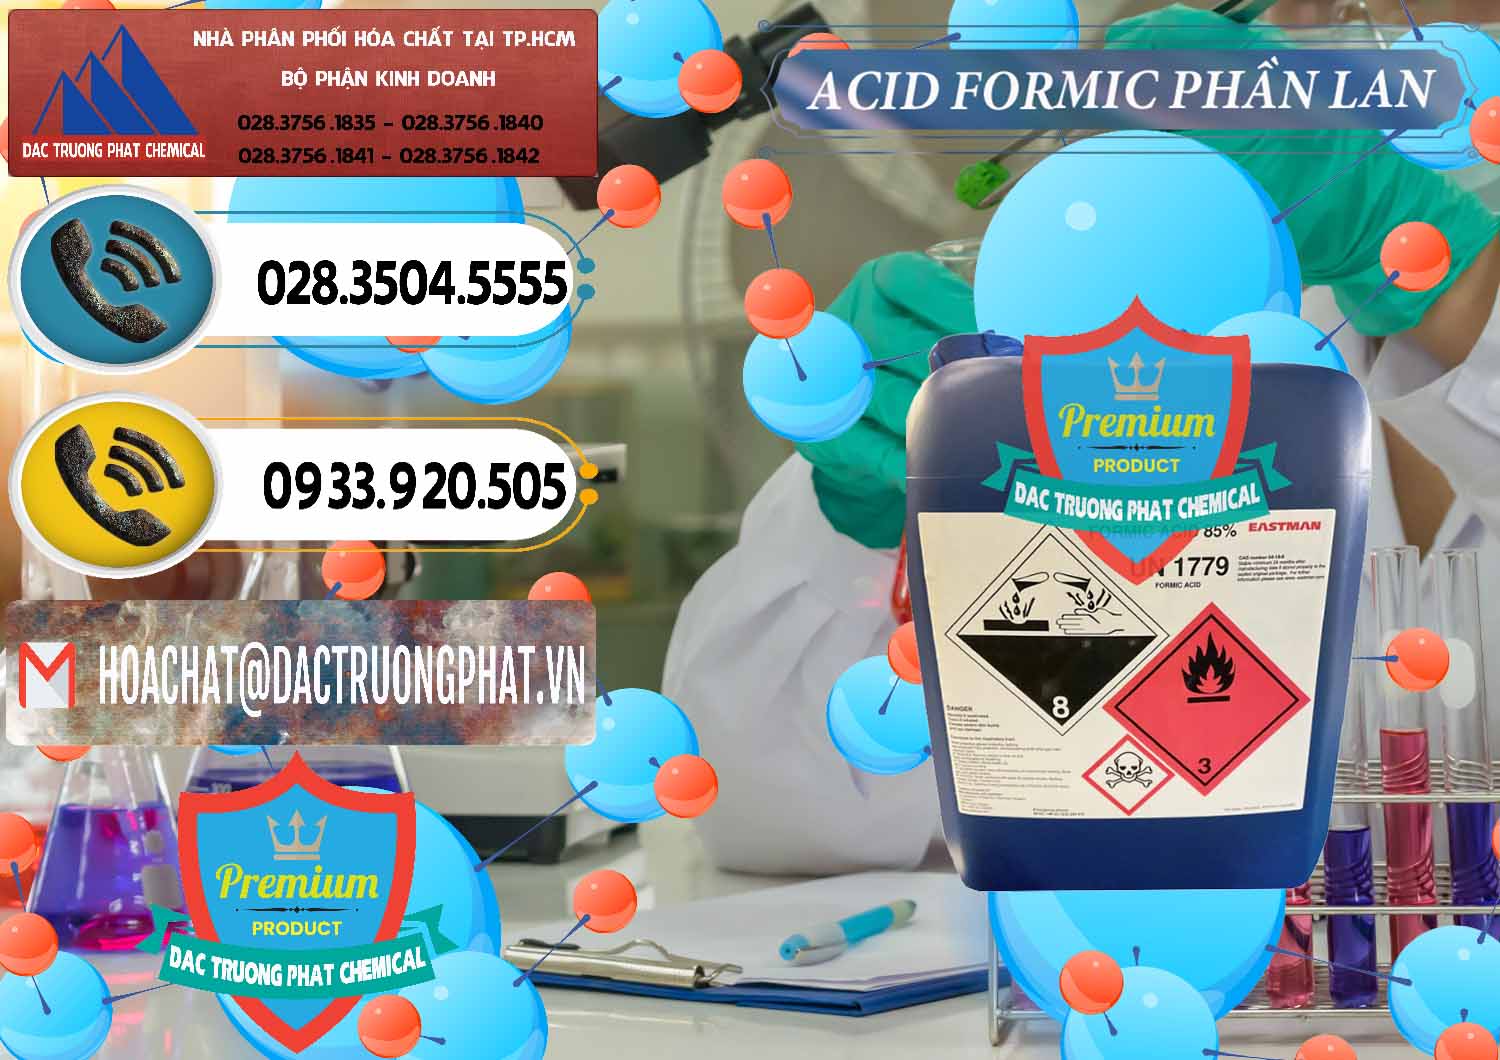 Đơn vị chuyên bán và cung cấp Acid Formic - Axit Formic Phần Lan Finland - 0376 - Đơn vị chuyên phân phối & cung ứng hóa chất tại TP.HCM - hoachatdetnhuom.vn